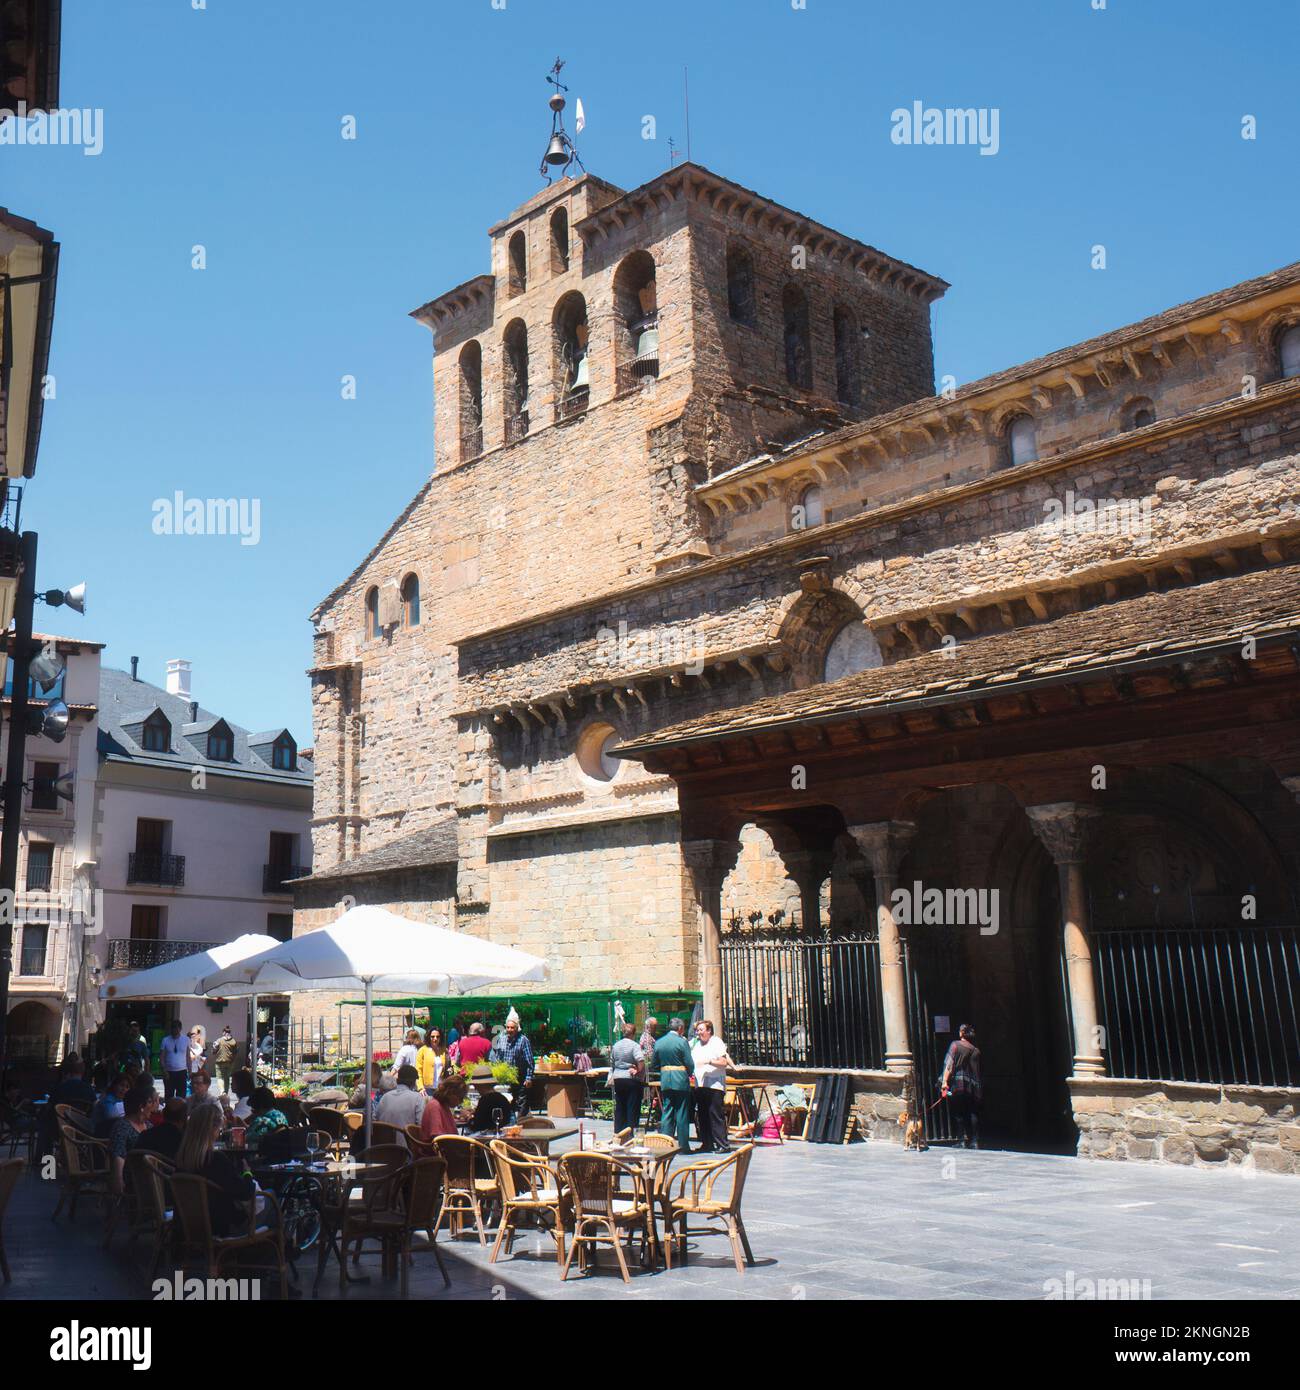 Jaca, province de Huesca, Aragon, Espagne. Cathédrale romane de San Pedro Apóstol. Cathédrale Saint-Pierre l'Apôtre. Banque D'Images